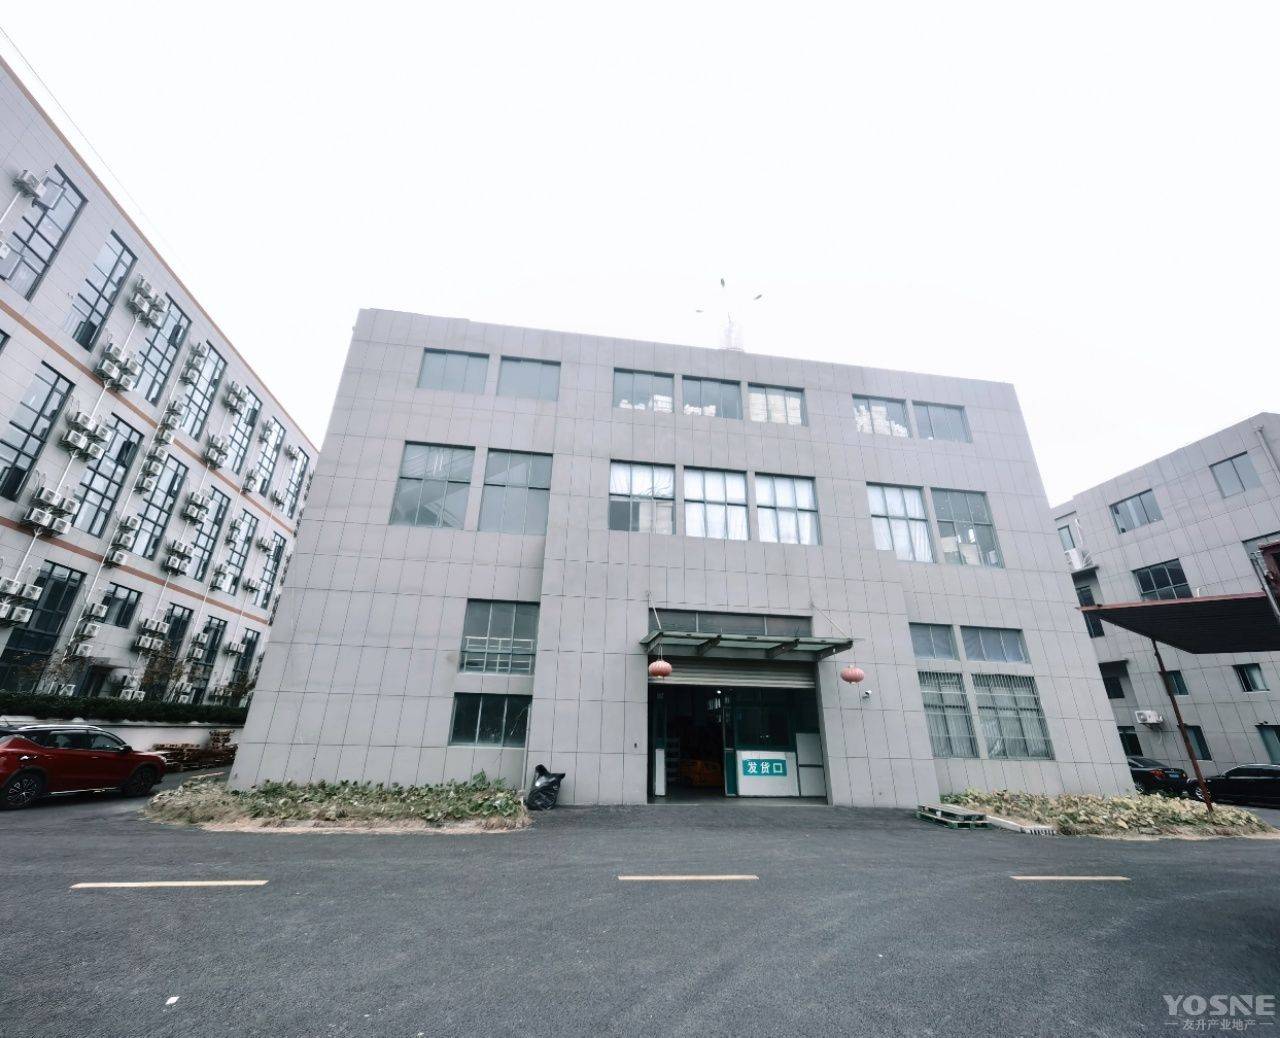 工业区双层标准厂房 104地块行业不限 近松江大学城